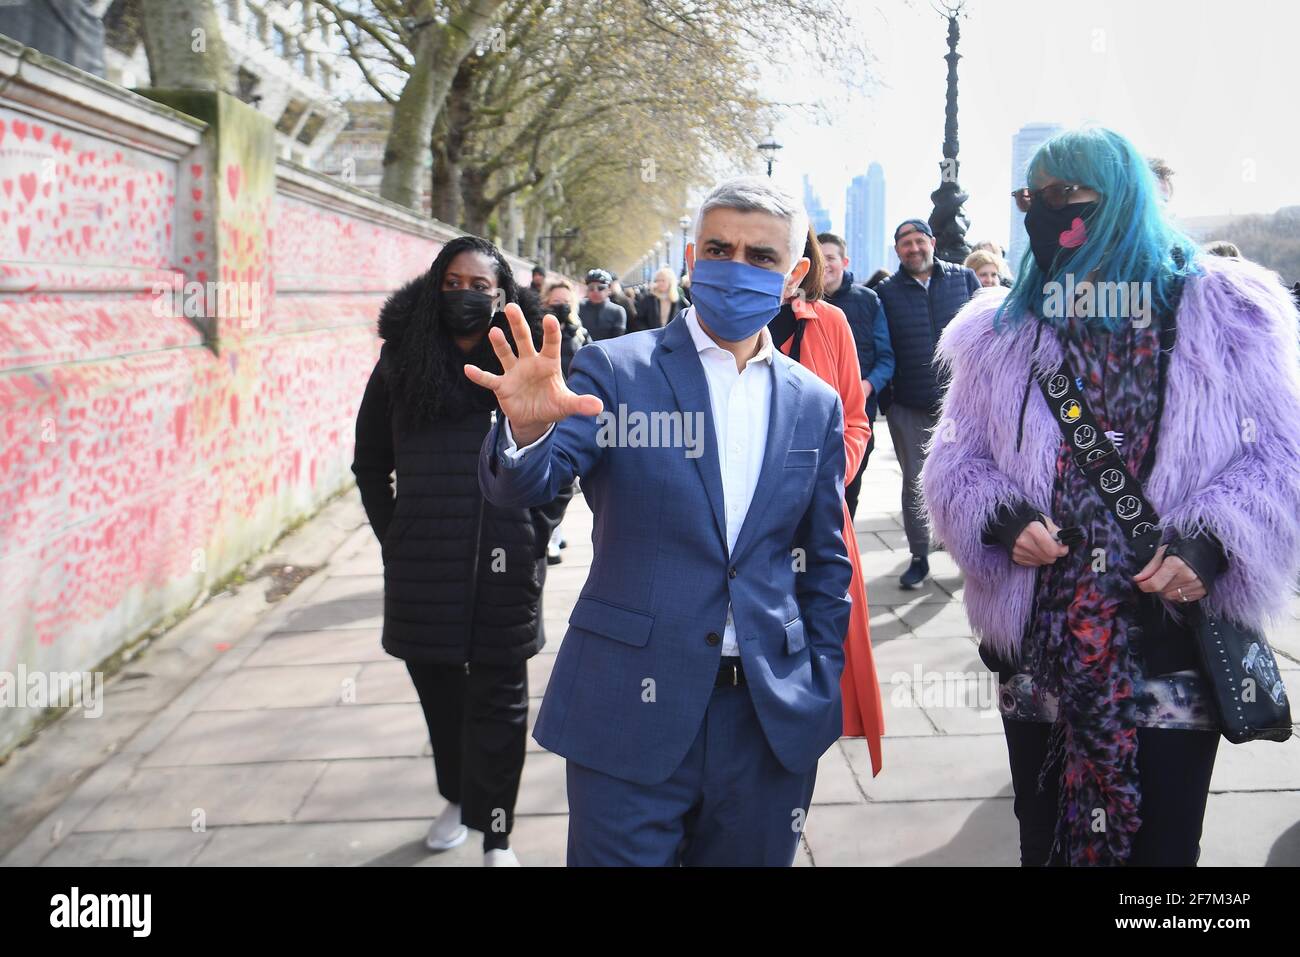 Le maire de Londres, Sadiq Khan, s'entretient avec les familles endeuillées alors qu'elles se réunissent pour marquer l'achèvement de la peinture d'environ 150,000 cœurs sur le mur national du Covid Memorial sur l'Embankment de Londres. Date de la photo : jeudi 8 avril 2021. Banque D'Images